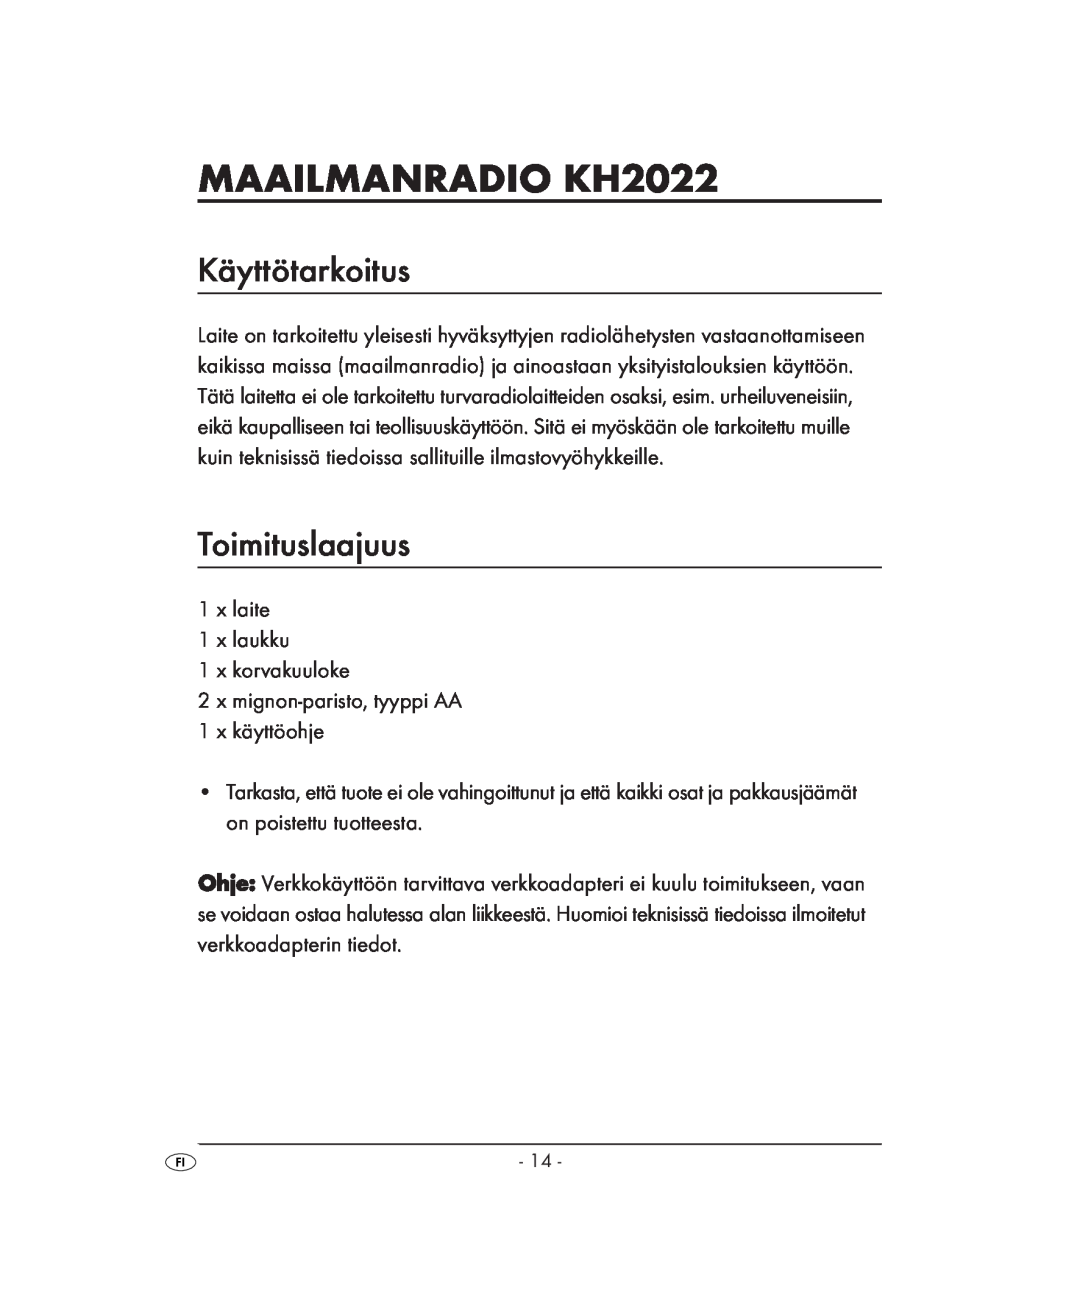 Kompernass KH 2022 manual MAAILMANRADIO KH2022, Käyttötarkoitus, Toimituslaajuus 